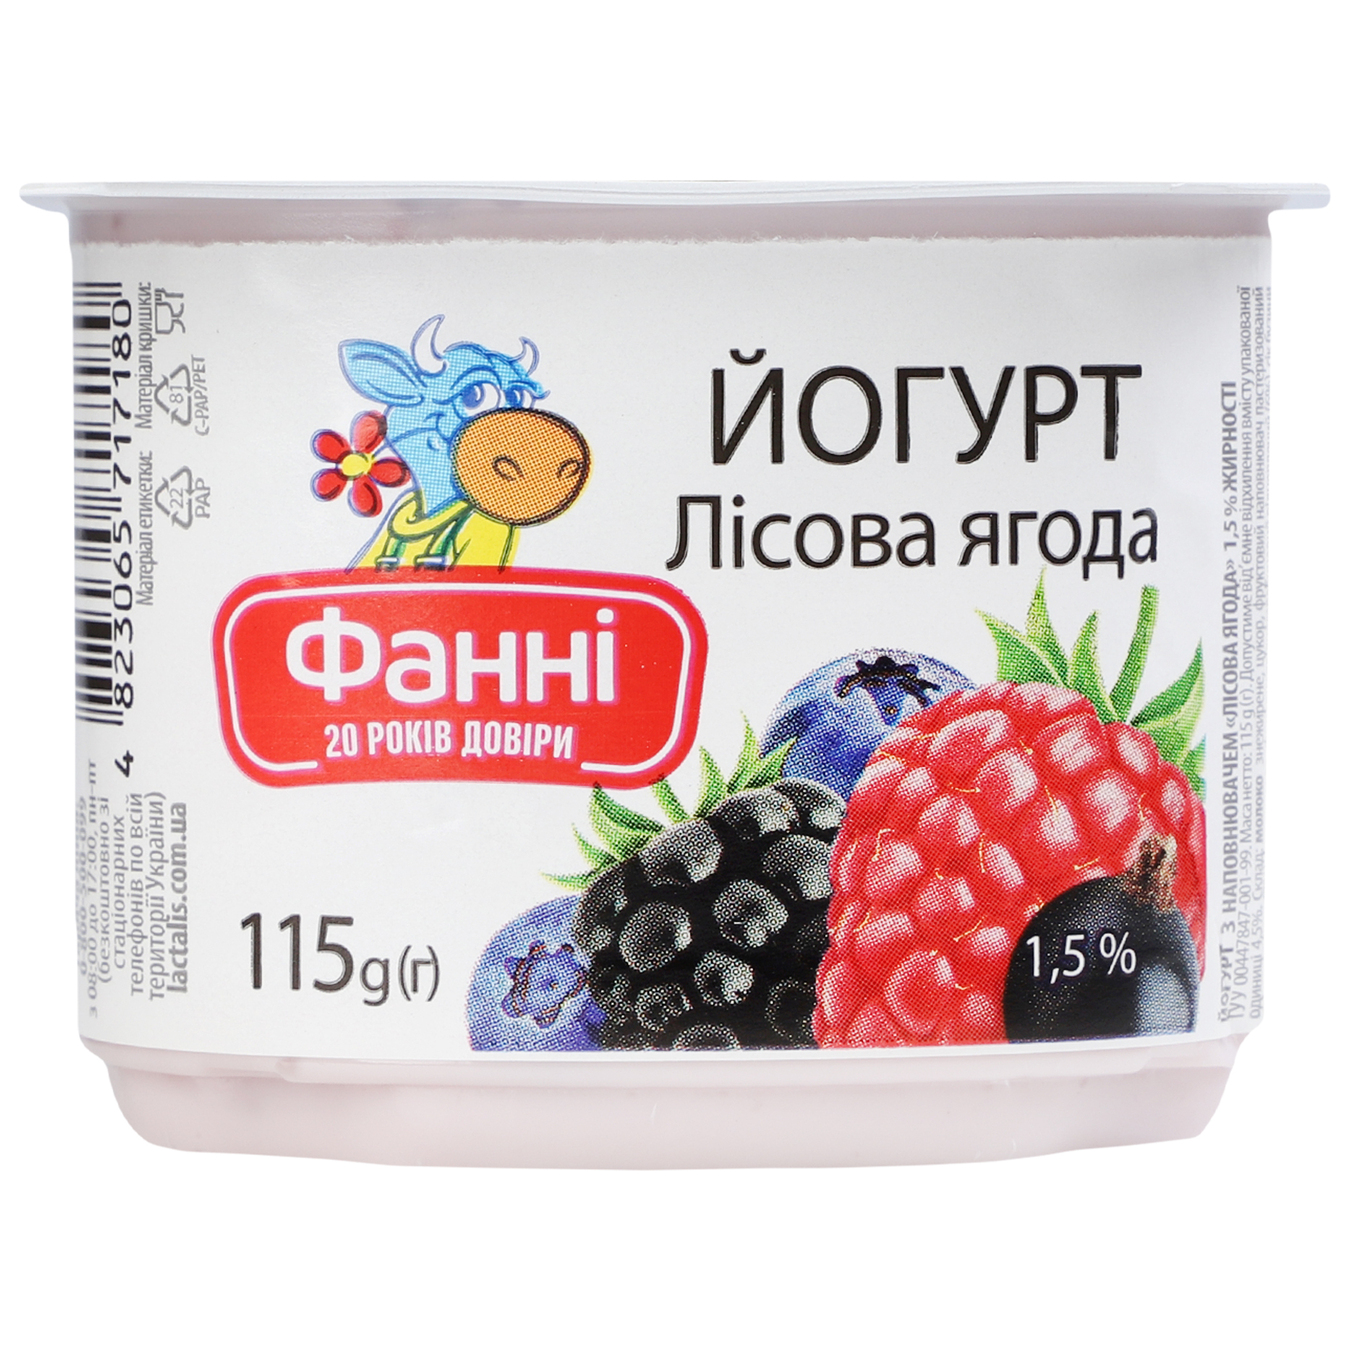 Йогурт Фанни с наполнителем лесная ягода стаканчик 1,5% 115г